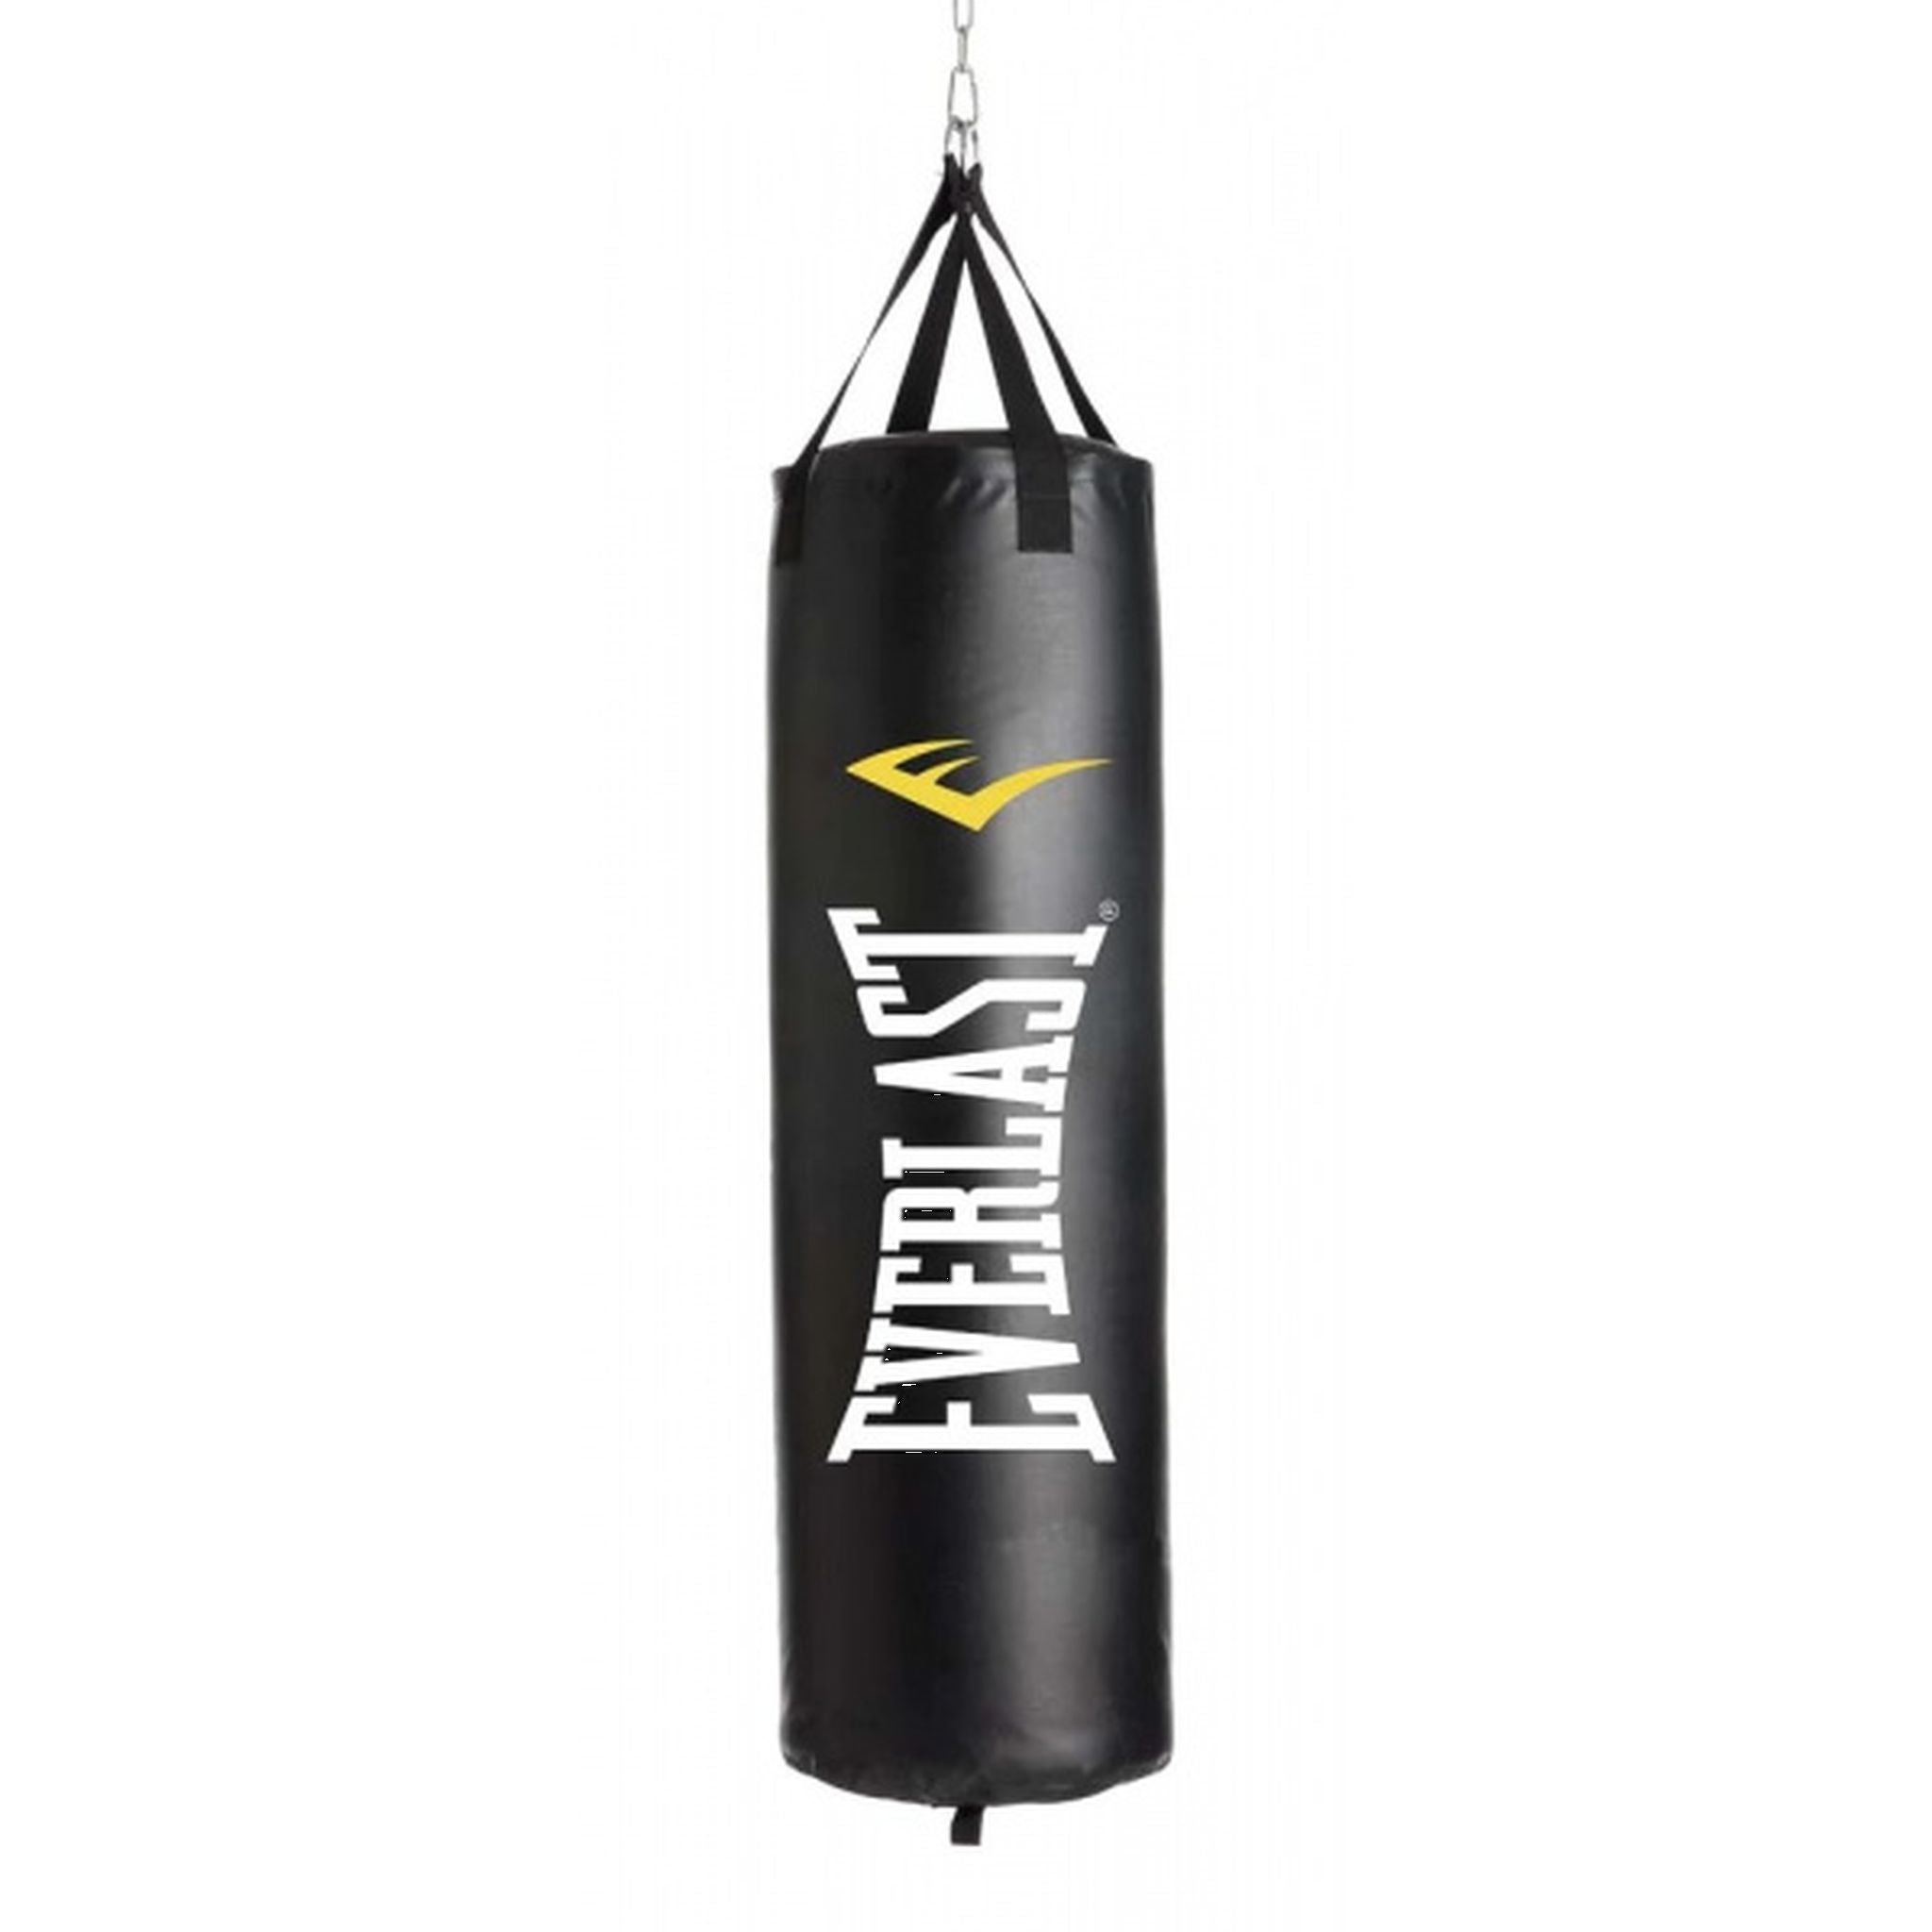 Everlast Nevatear Elite 5FT Heavy Boxing Bag